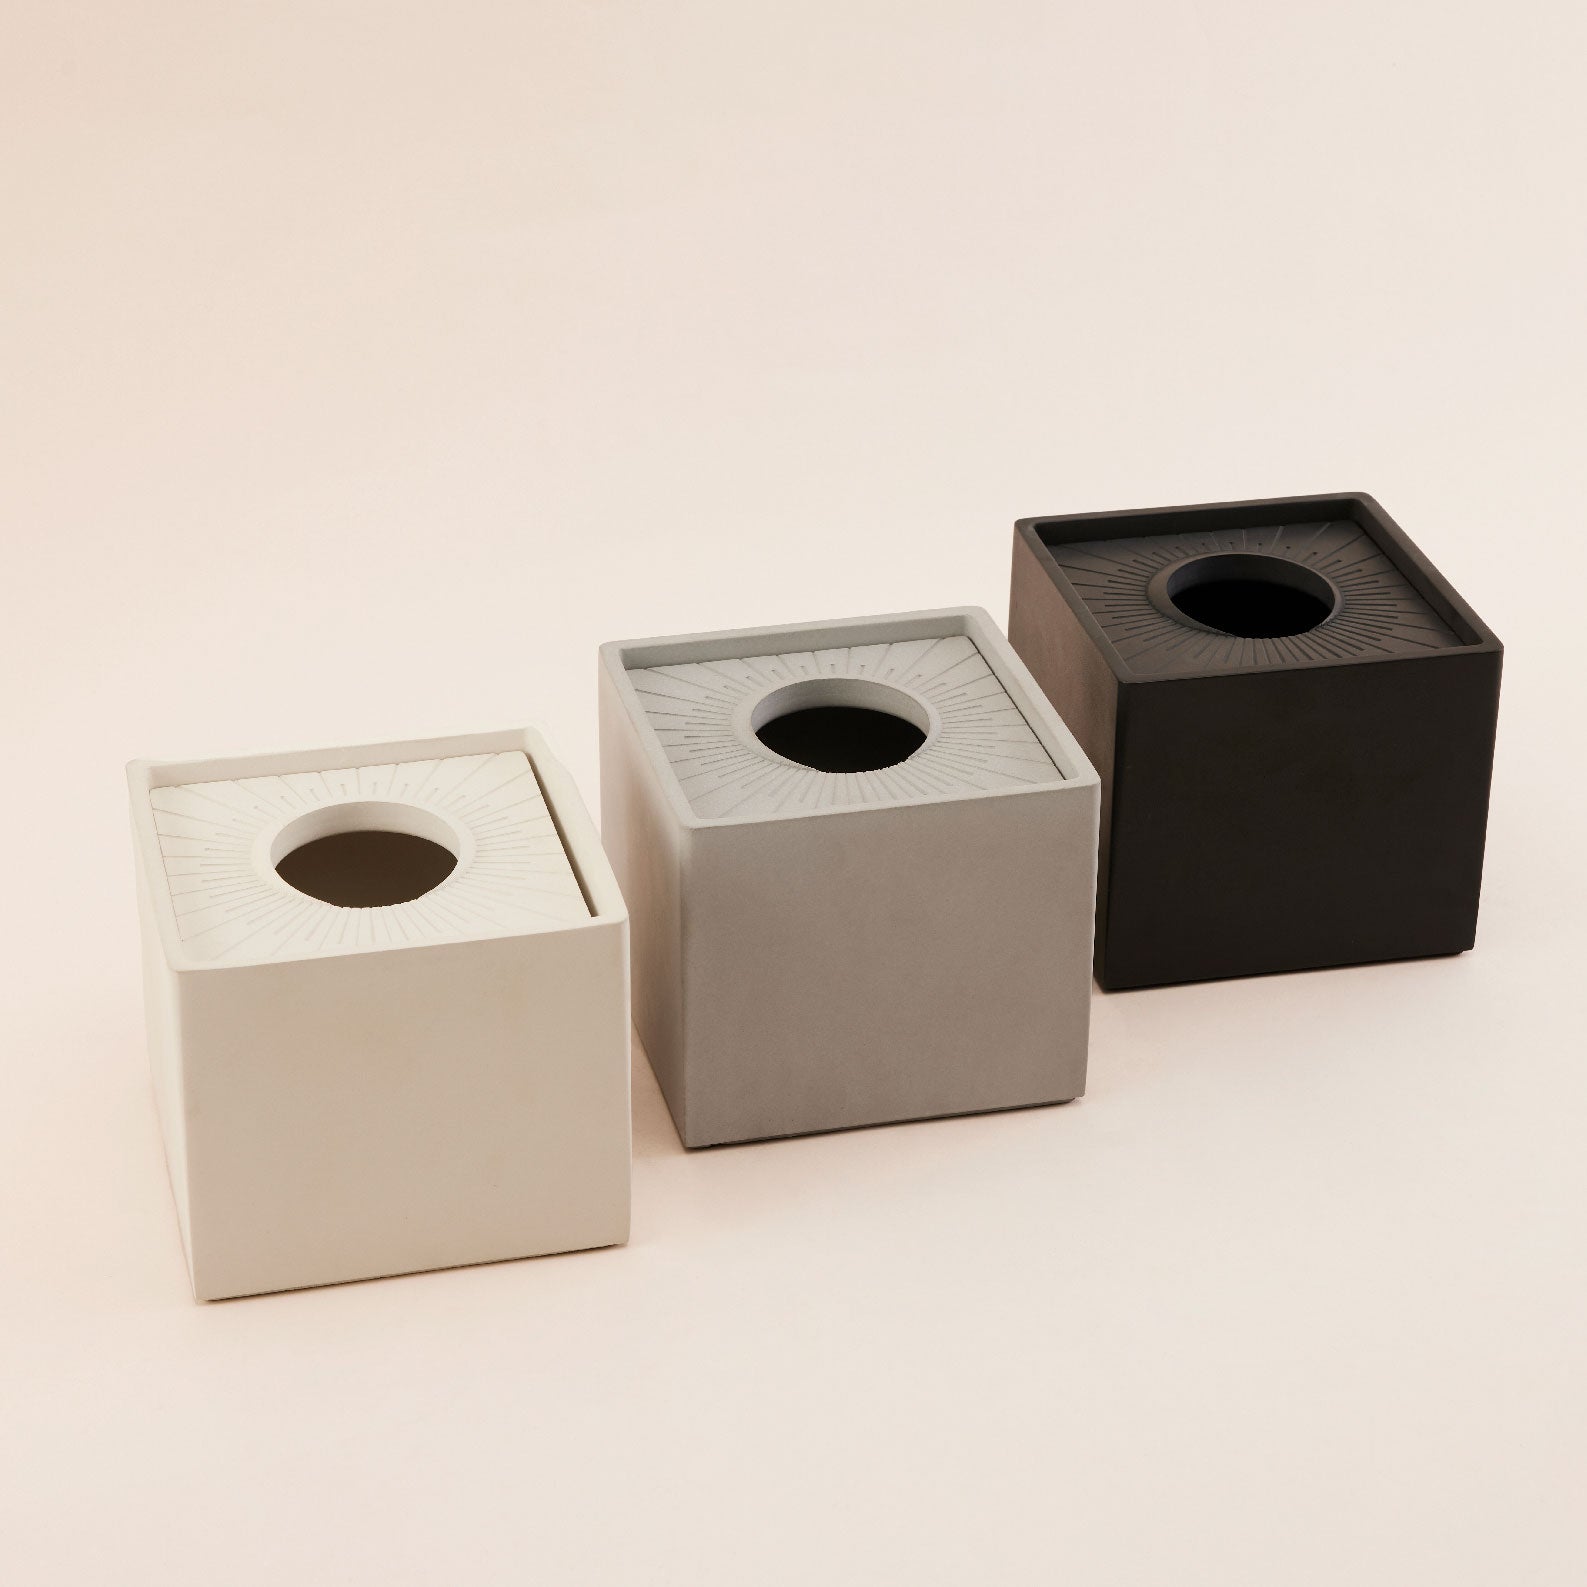 Square Concrete Tissue Box | กล่องใส่กระดาษทิชชู แบบม้วน ทรงสี่เหลี่ยมจัตุรัส